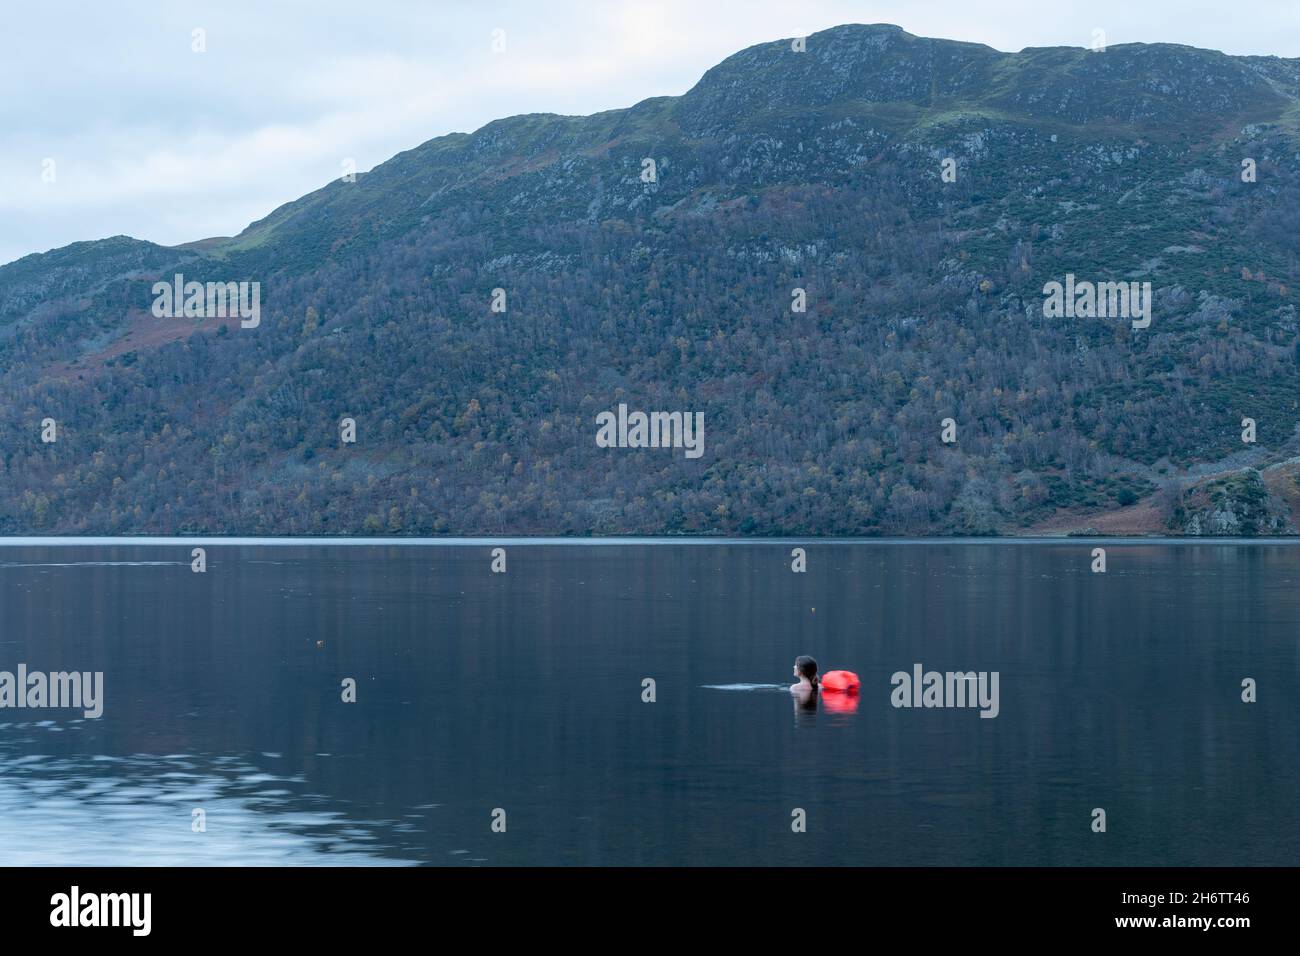 Nuotatore selvatico, donna che nuota a Ullswater nel Lake District al mattino presto con montagne sullo sfondo, Cumbria, Inghilterra, Regno Unito Foto Stock